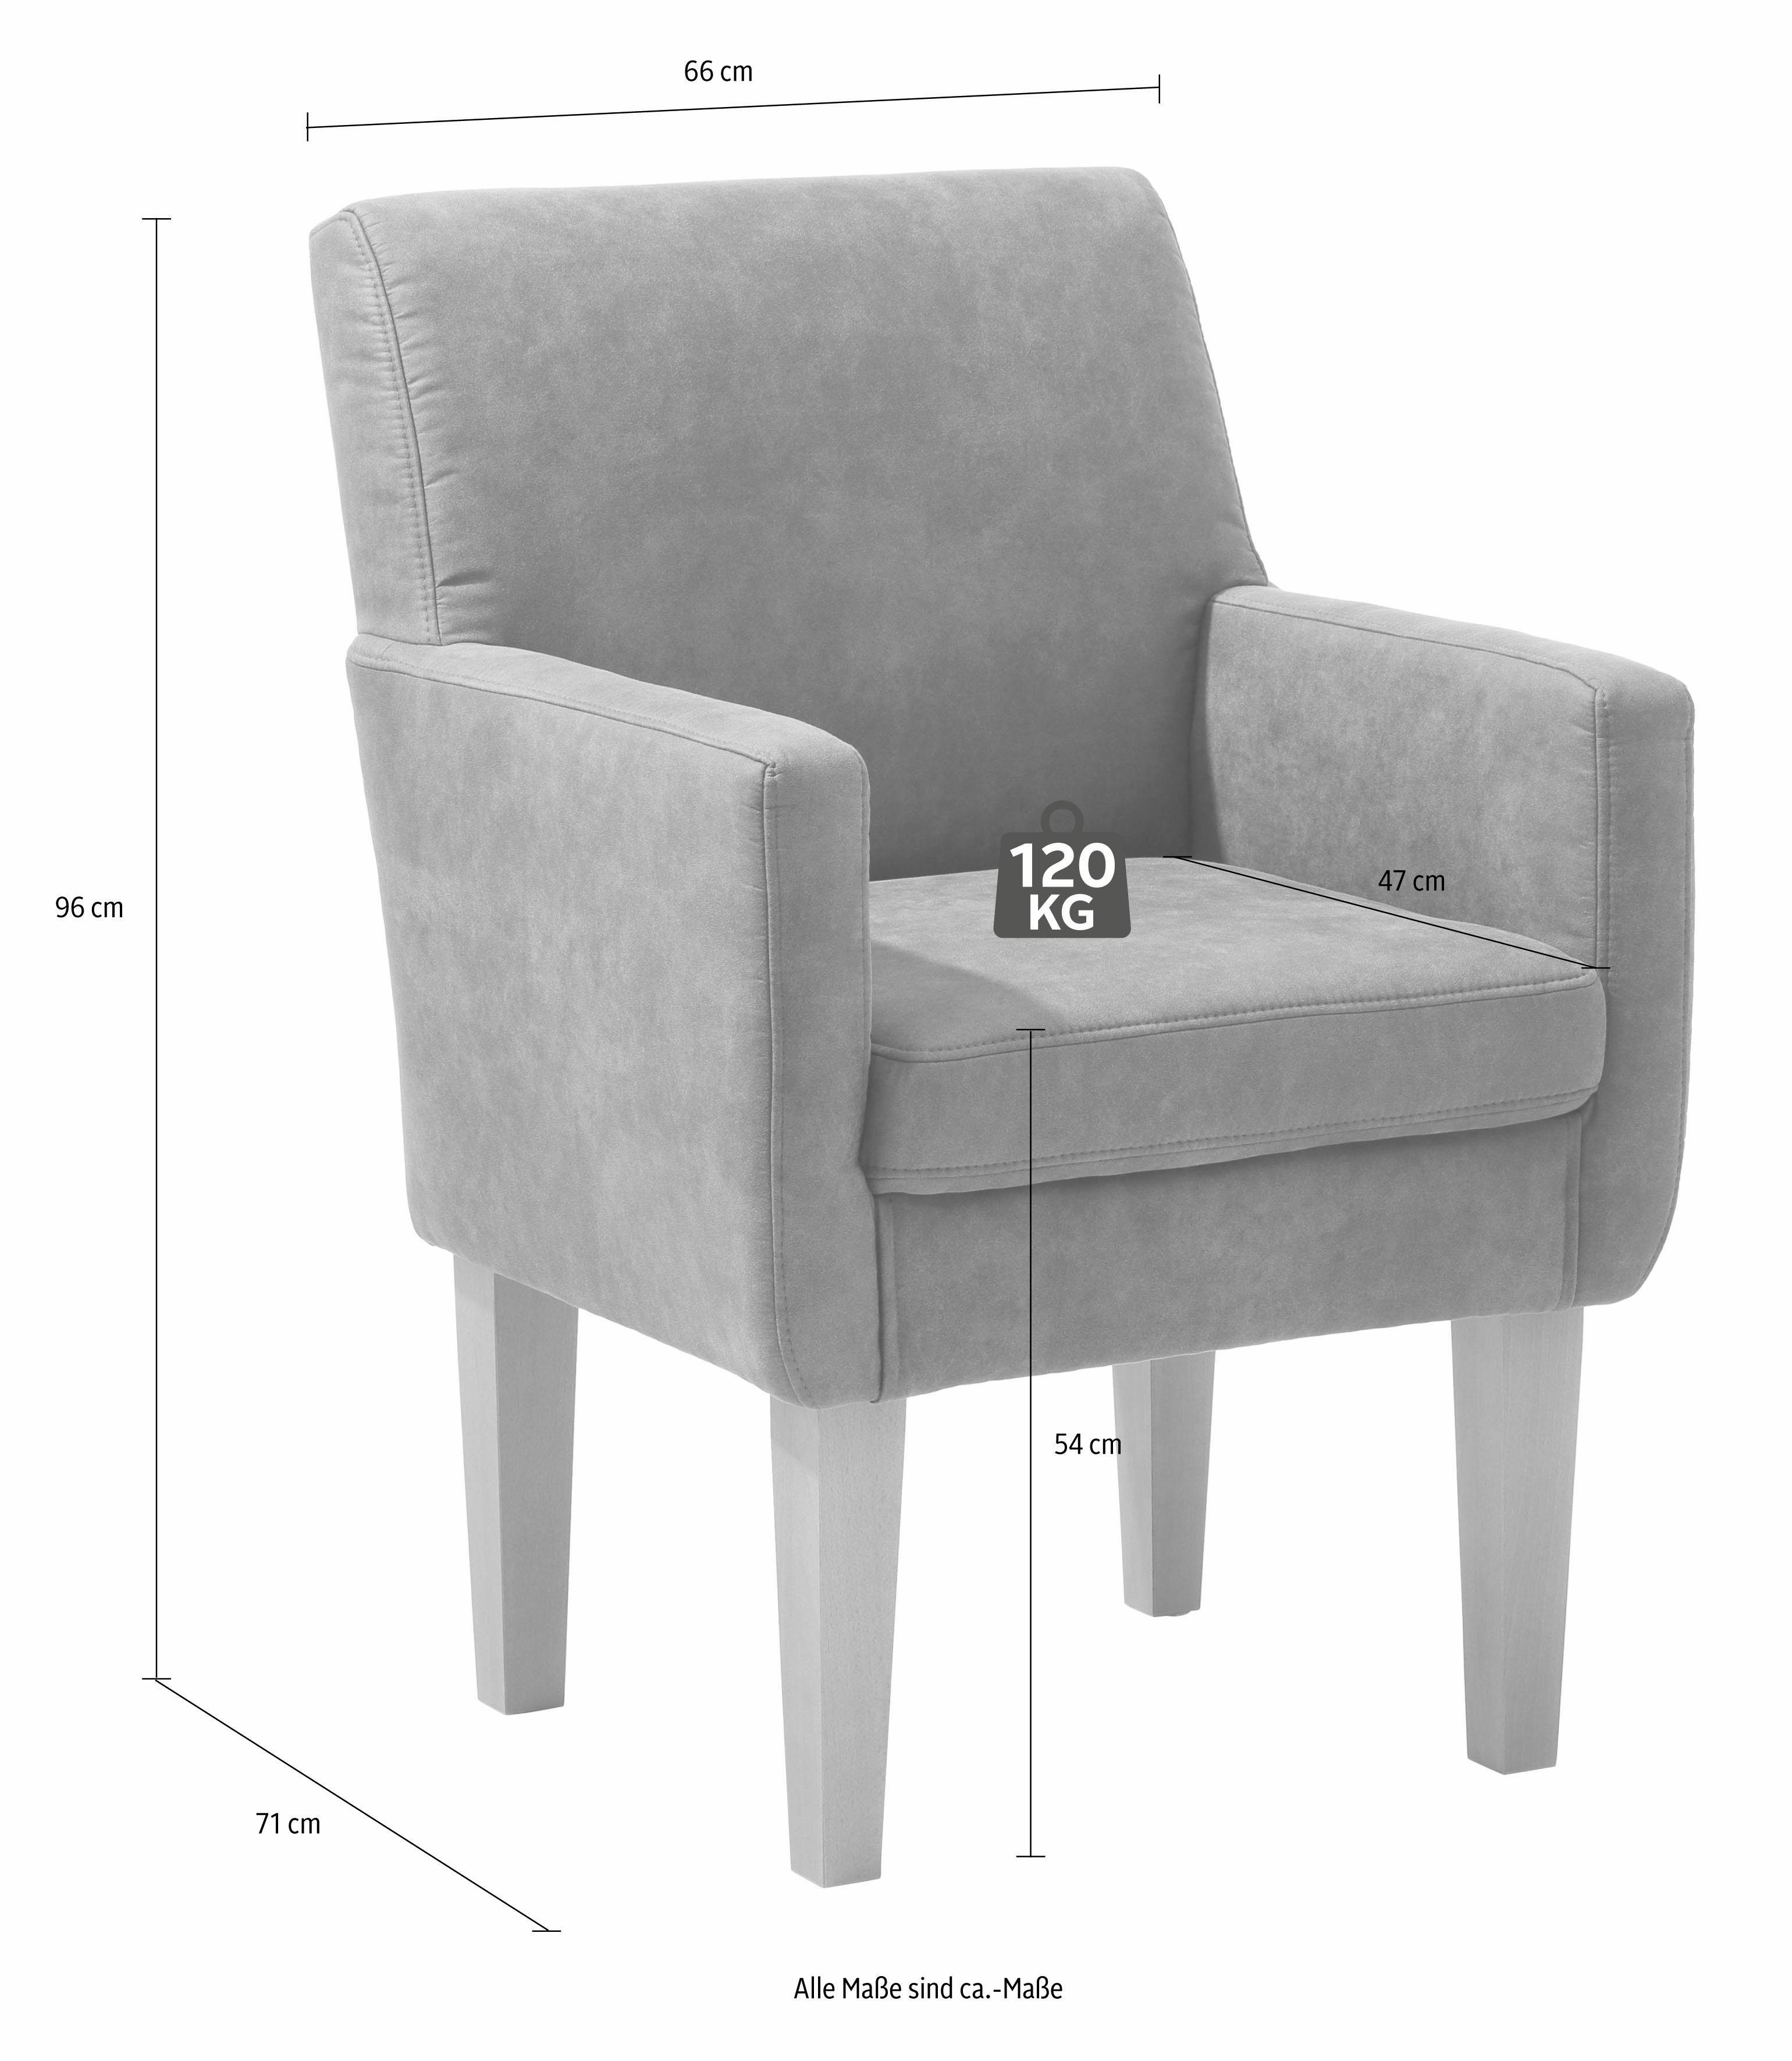 Home affaire Fehmarn comfortabele zithoogte van 54 cm, in 3 verschillende stofkwaliteiten online verkrijgbaar | OTTO